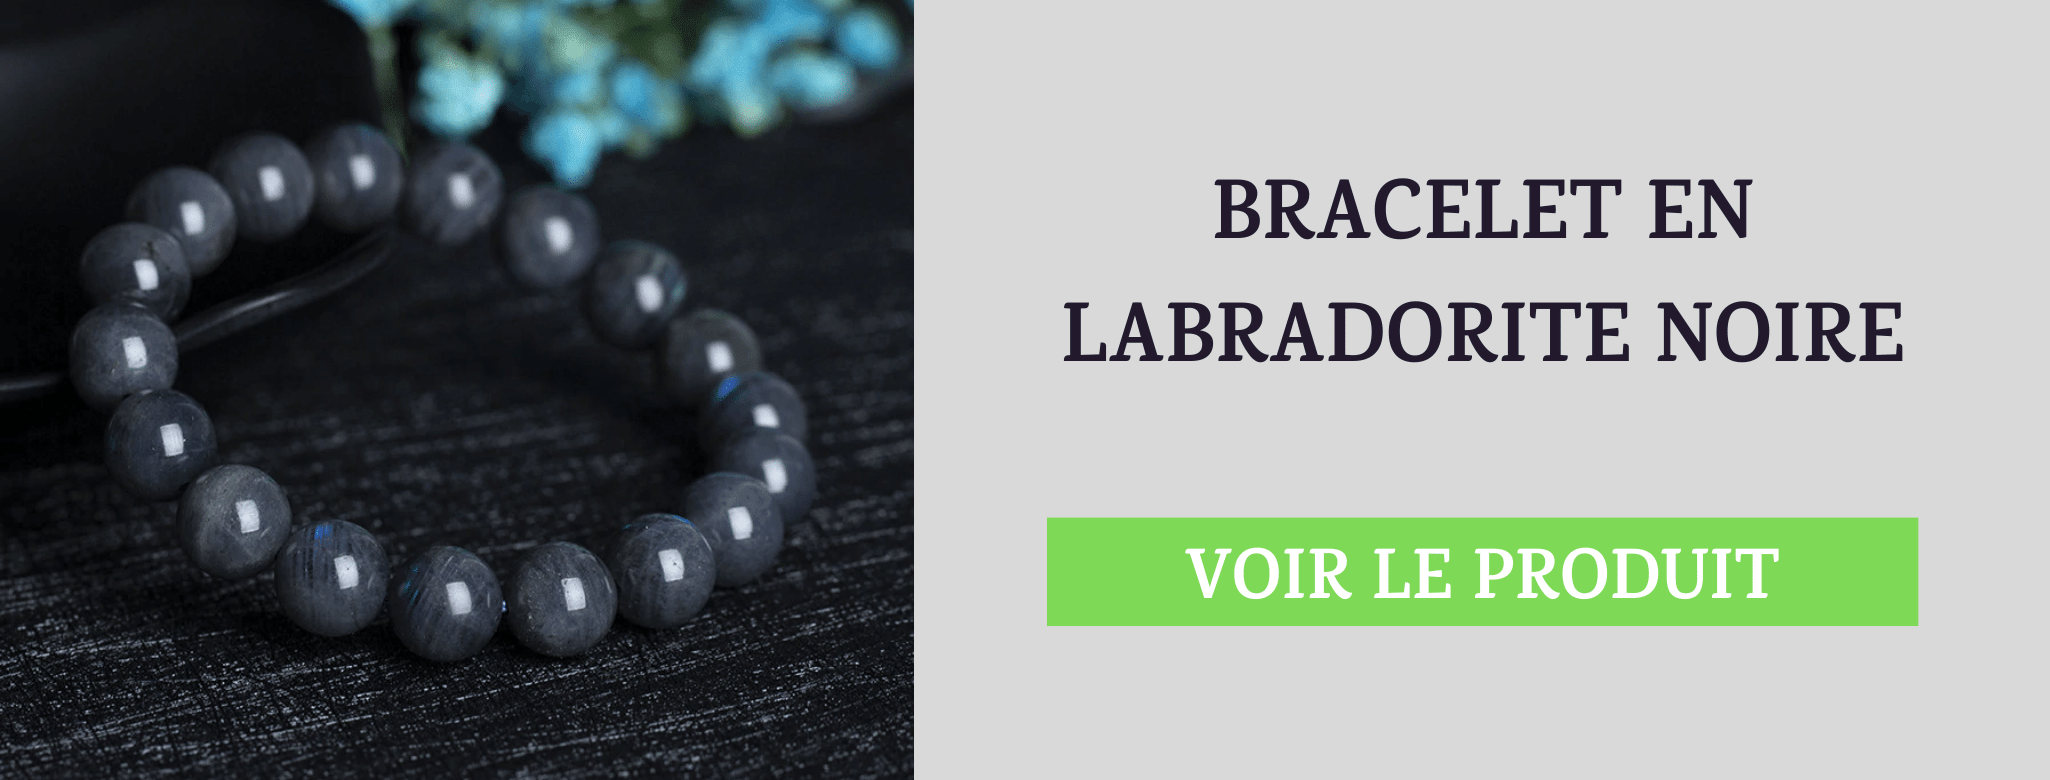 Bracelet Labradorite Noire